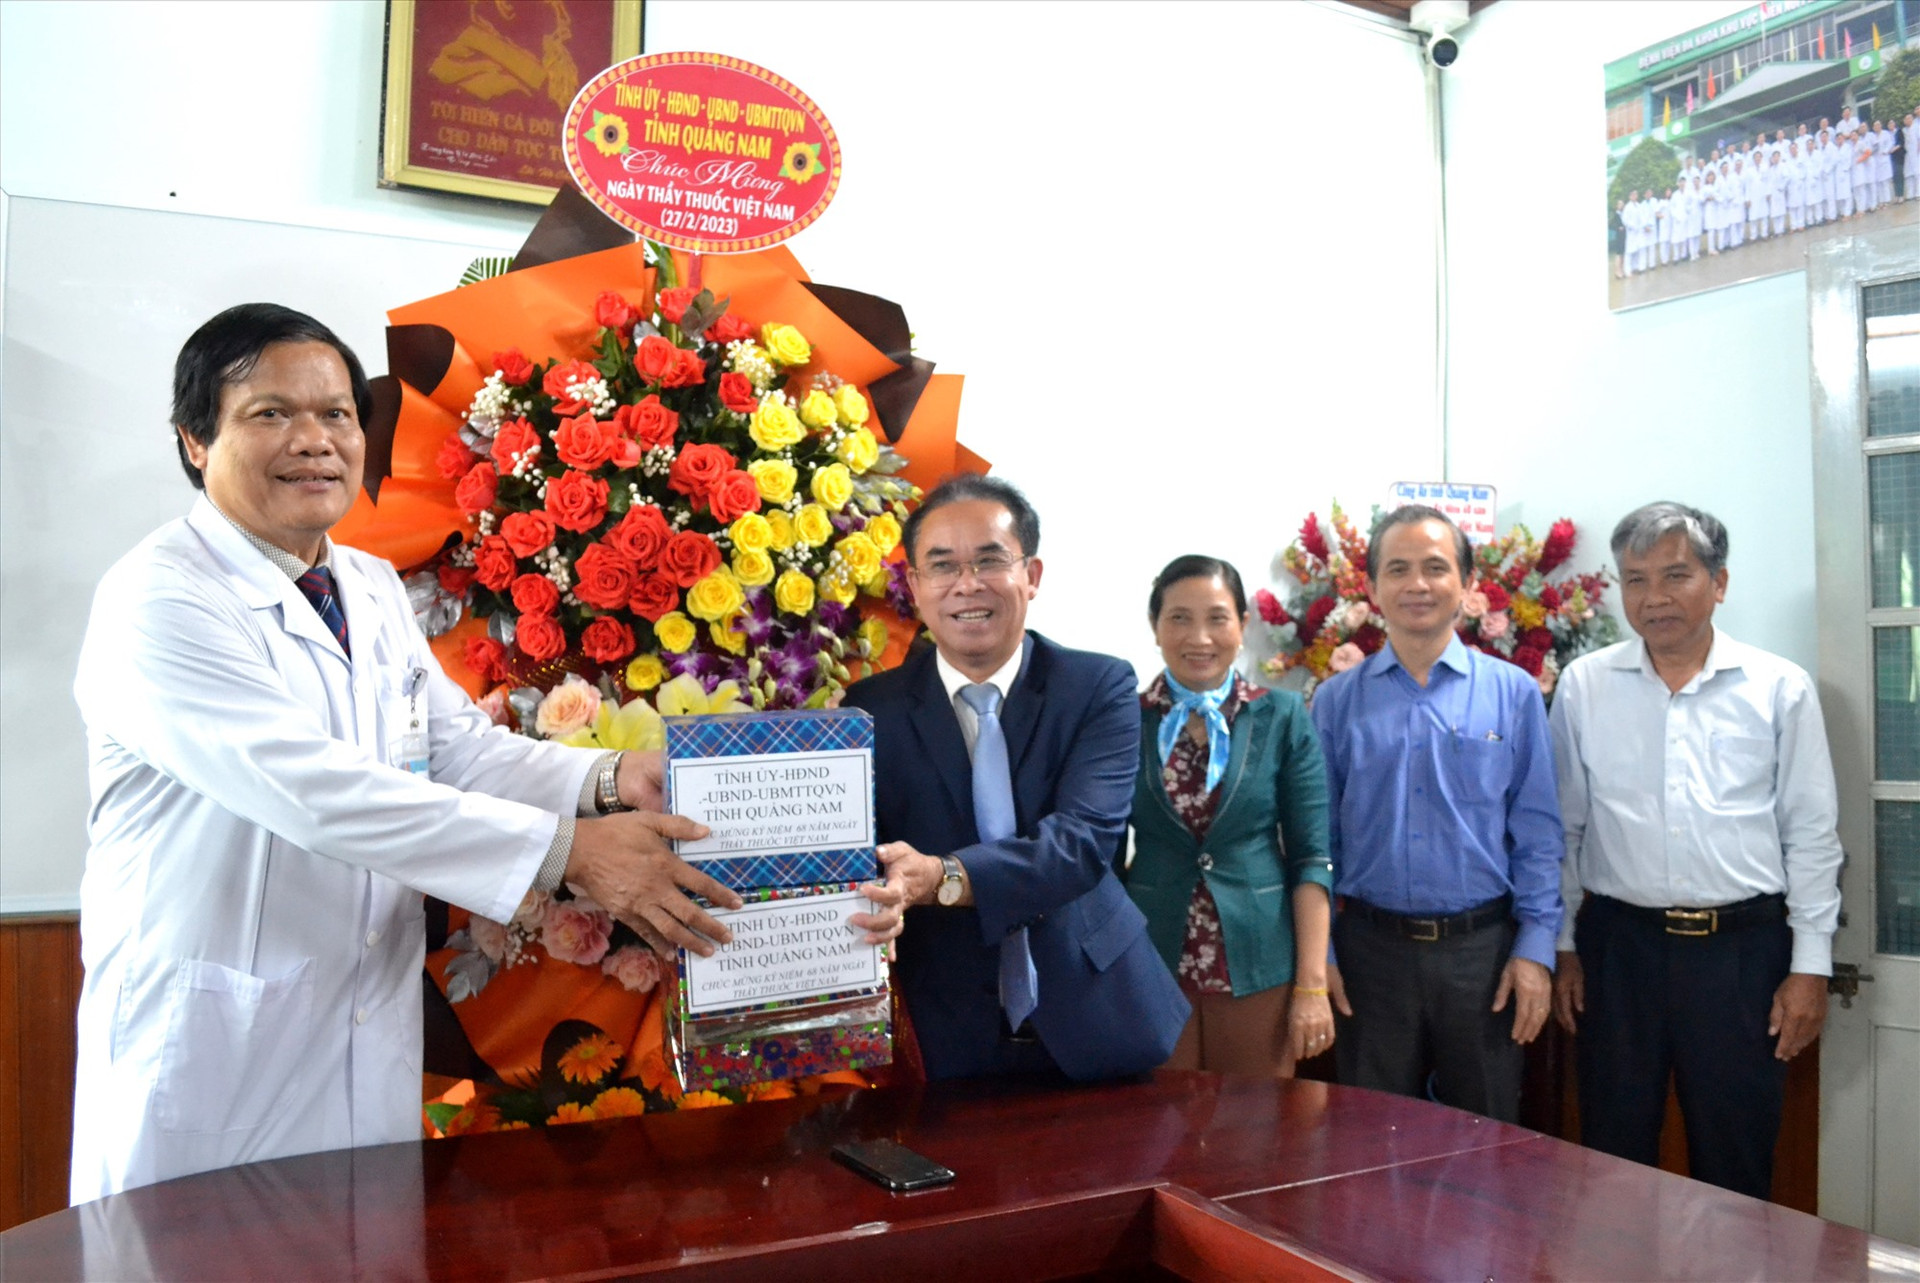 Phó Chủ tịch UBND tỉnh Trần Anh Tuấn đánh giá cao các kết quả đạt được của Bệnh viện đa khoa khu vực miền núi phía bắc Quảng Nam. Ảnh: Q.VIỆT